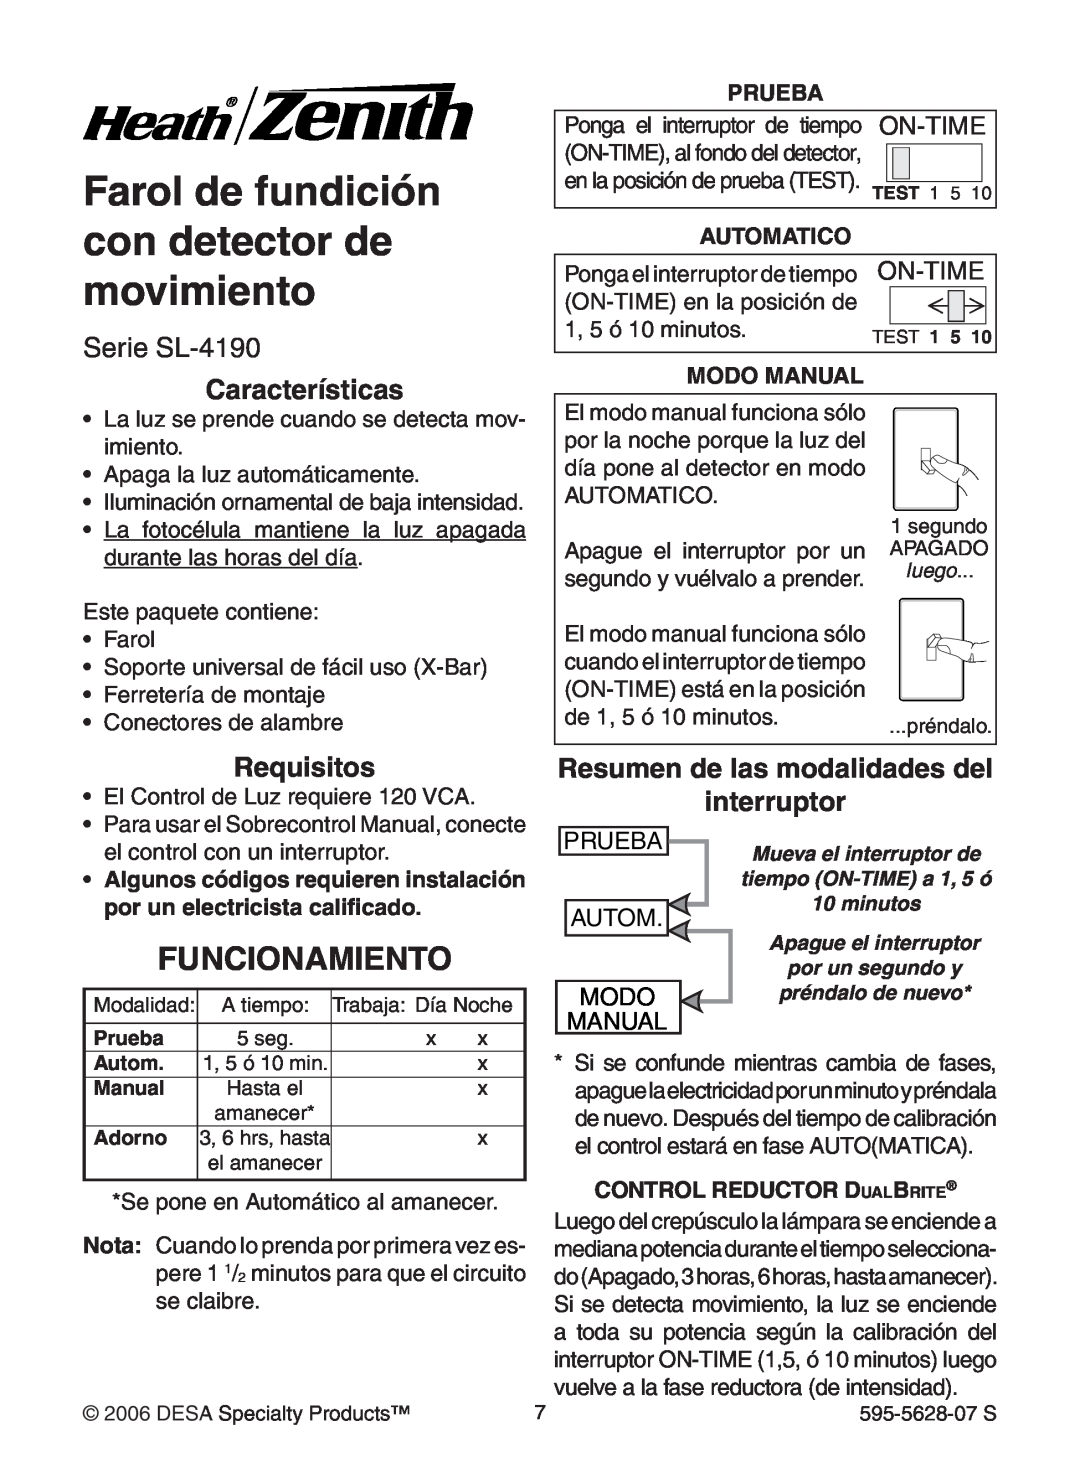 Heath Zenith Farol de fundición con detector de movimiento, Funcionamiento, Serie SL-4190, Características, Requisitos 